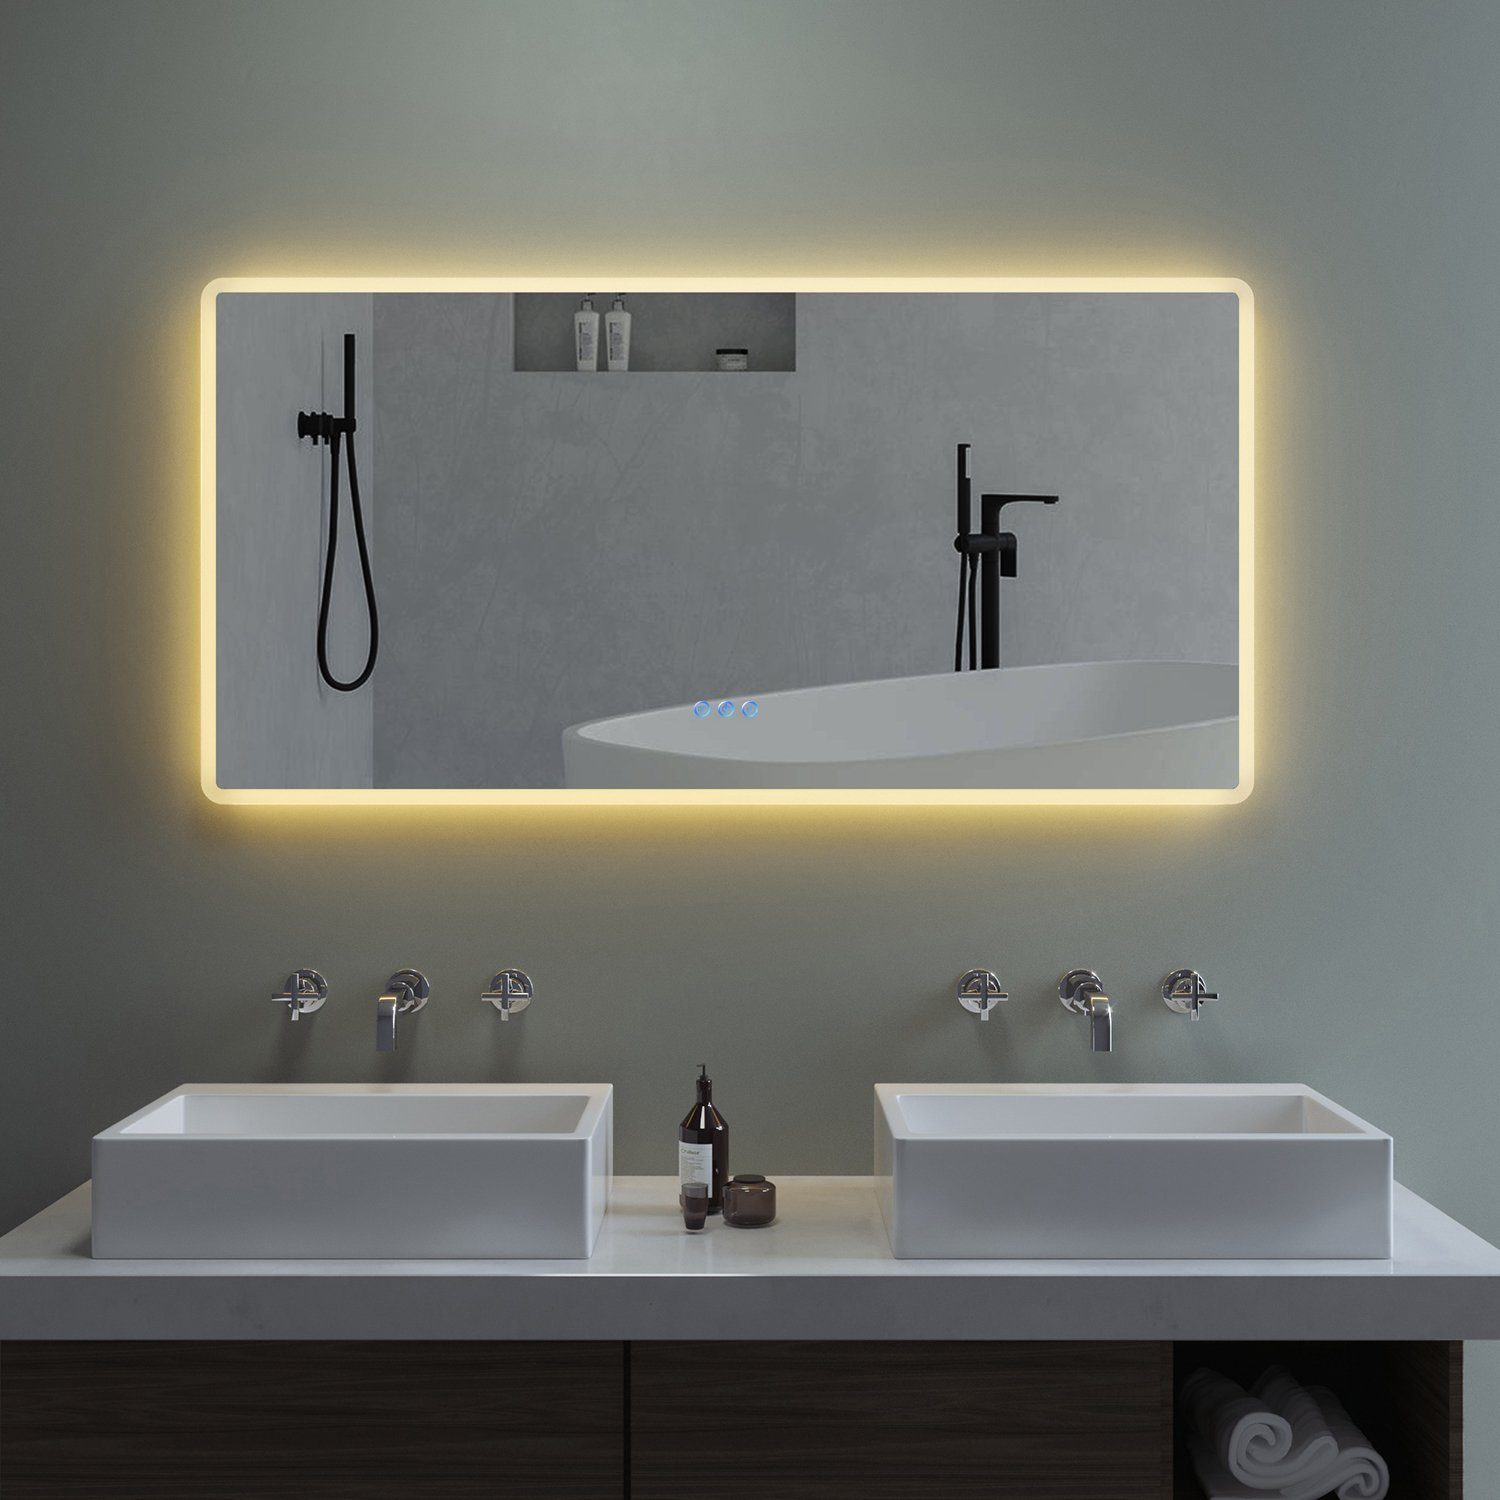 LED Beleuchtung Kalt Warm weiß licht Badezimmer Bad Wand Hänge spiegel 80 x 60 